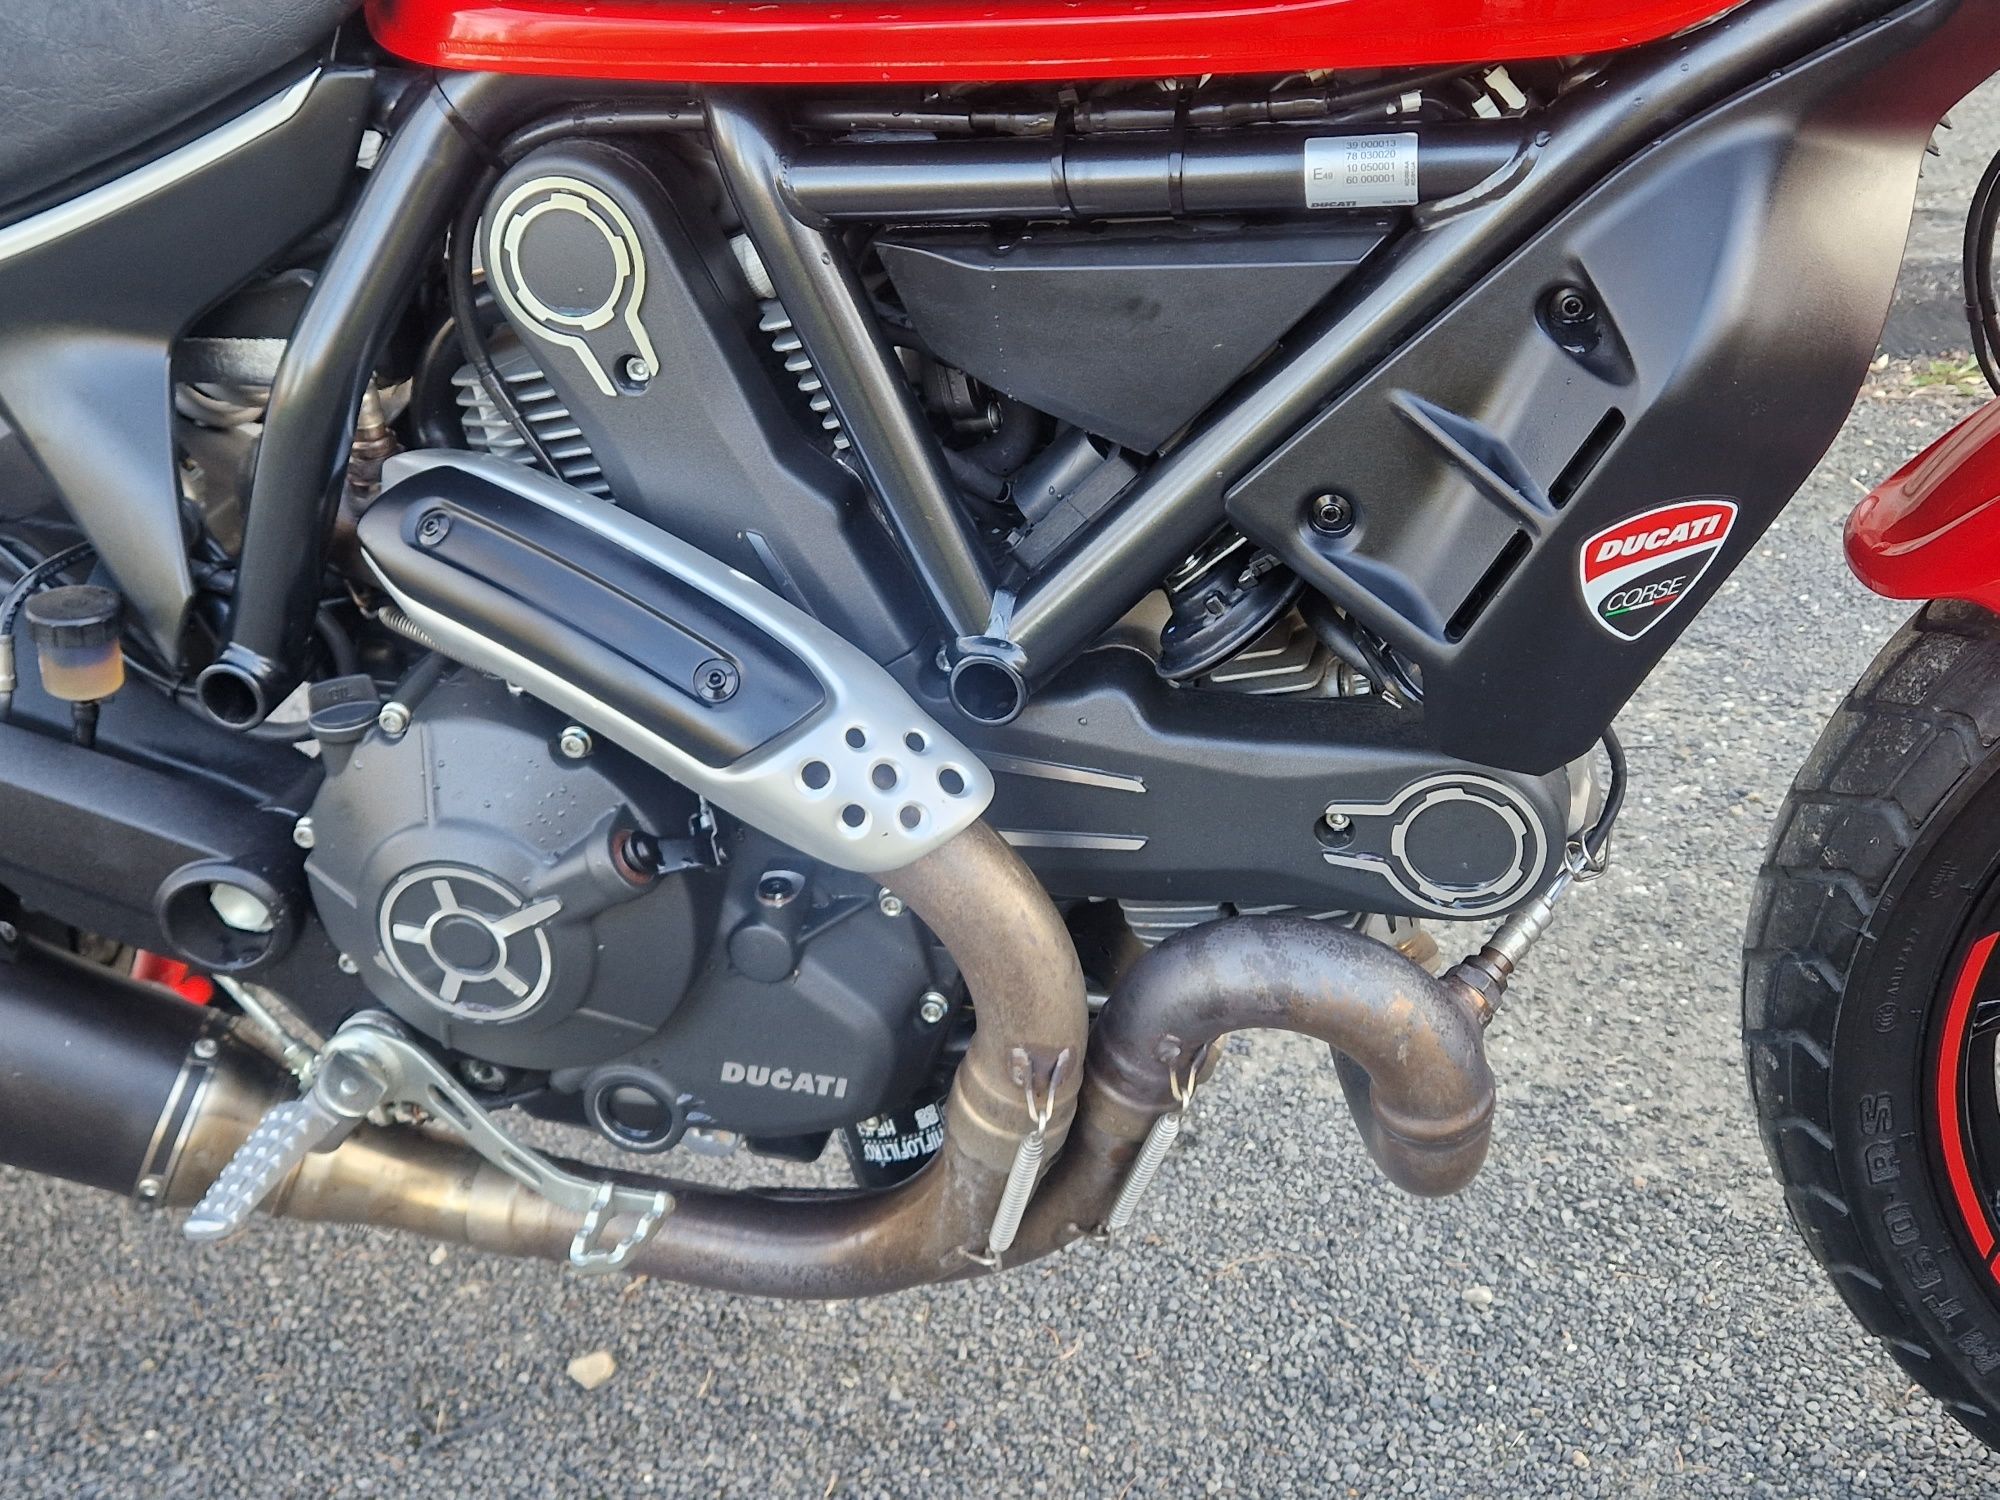 Ducati Scrambler 800 Zadbany Czerwony Niski przebieg Nietuzinkowy